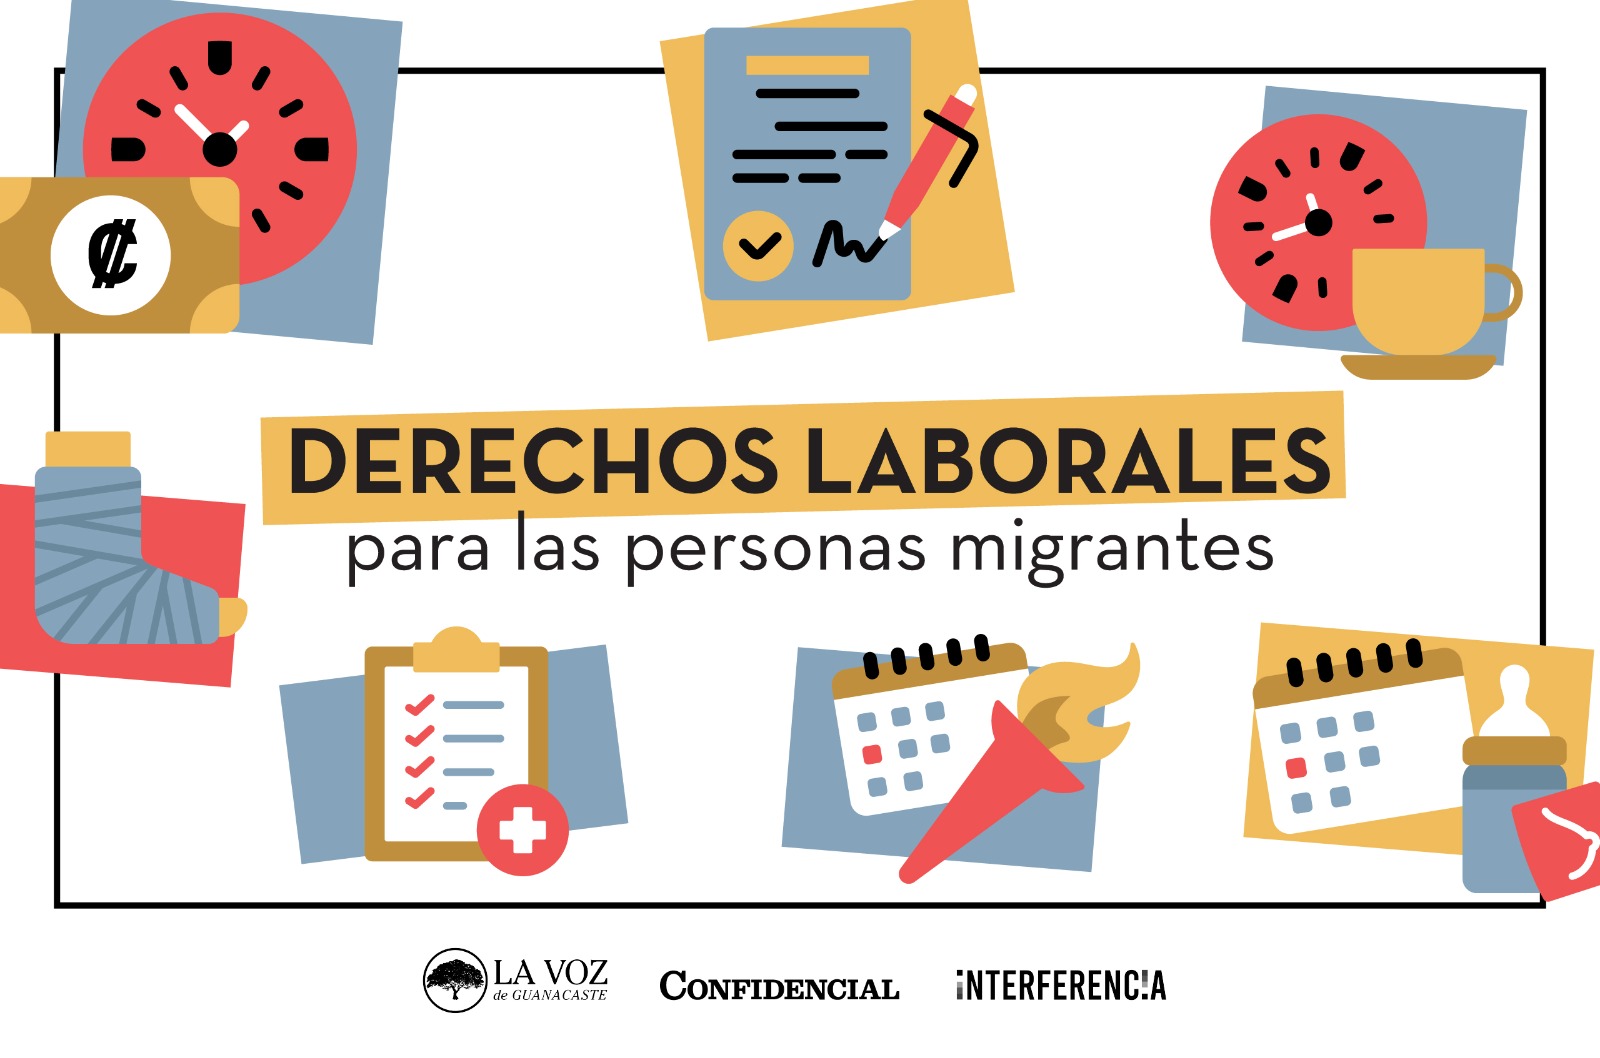 Derechos laborales de las personas migrantes en Costa Rica